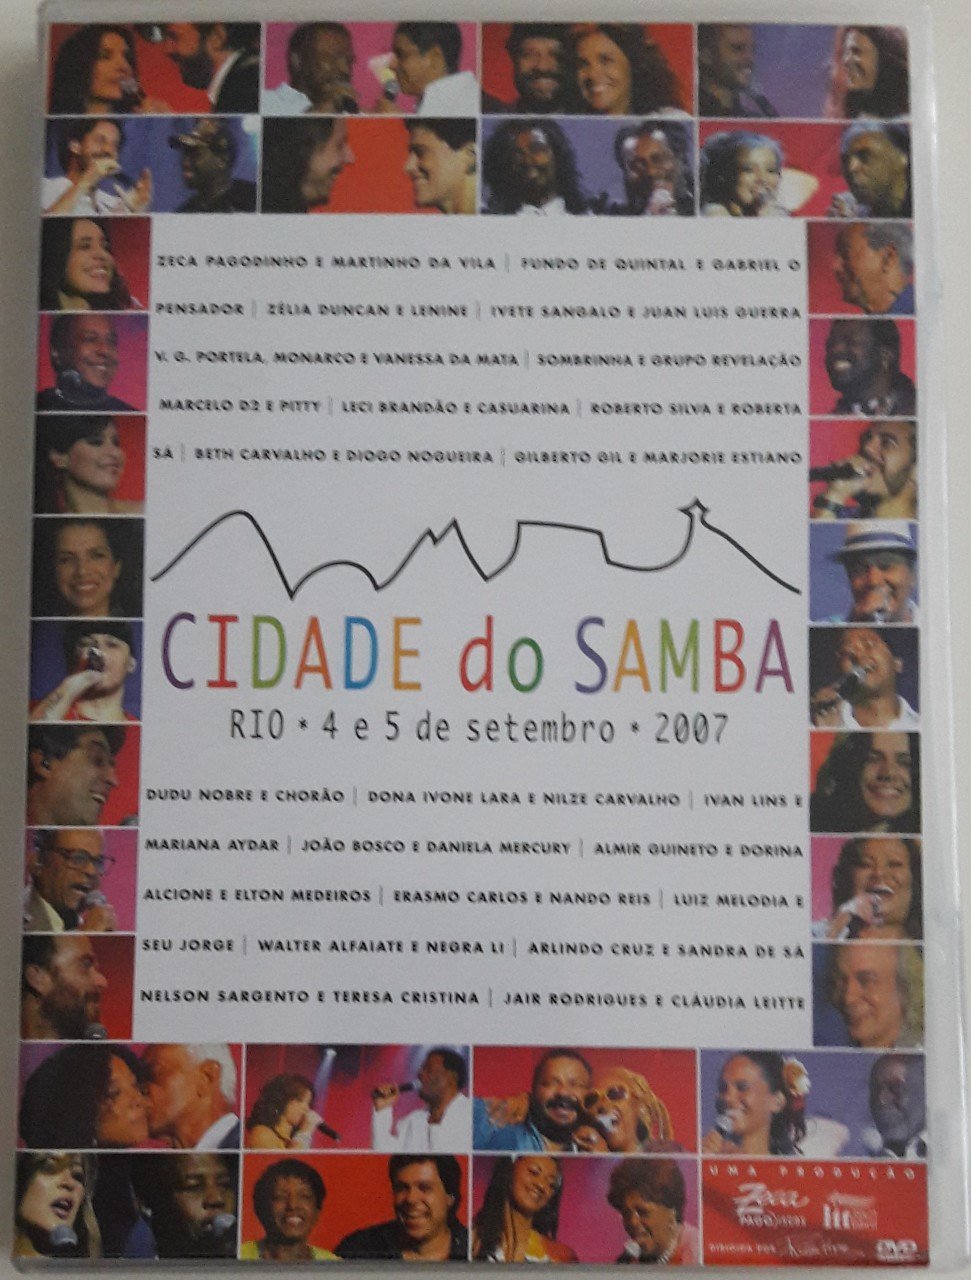 CIDADE DO SAMBA - RIO 4 E 5 DE SETEMBRO 2007 (2007) - DVD 2.EL